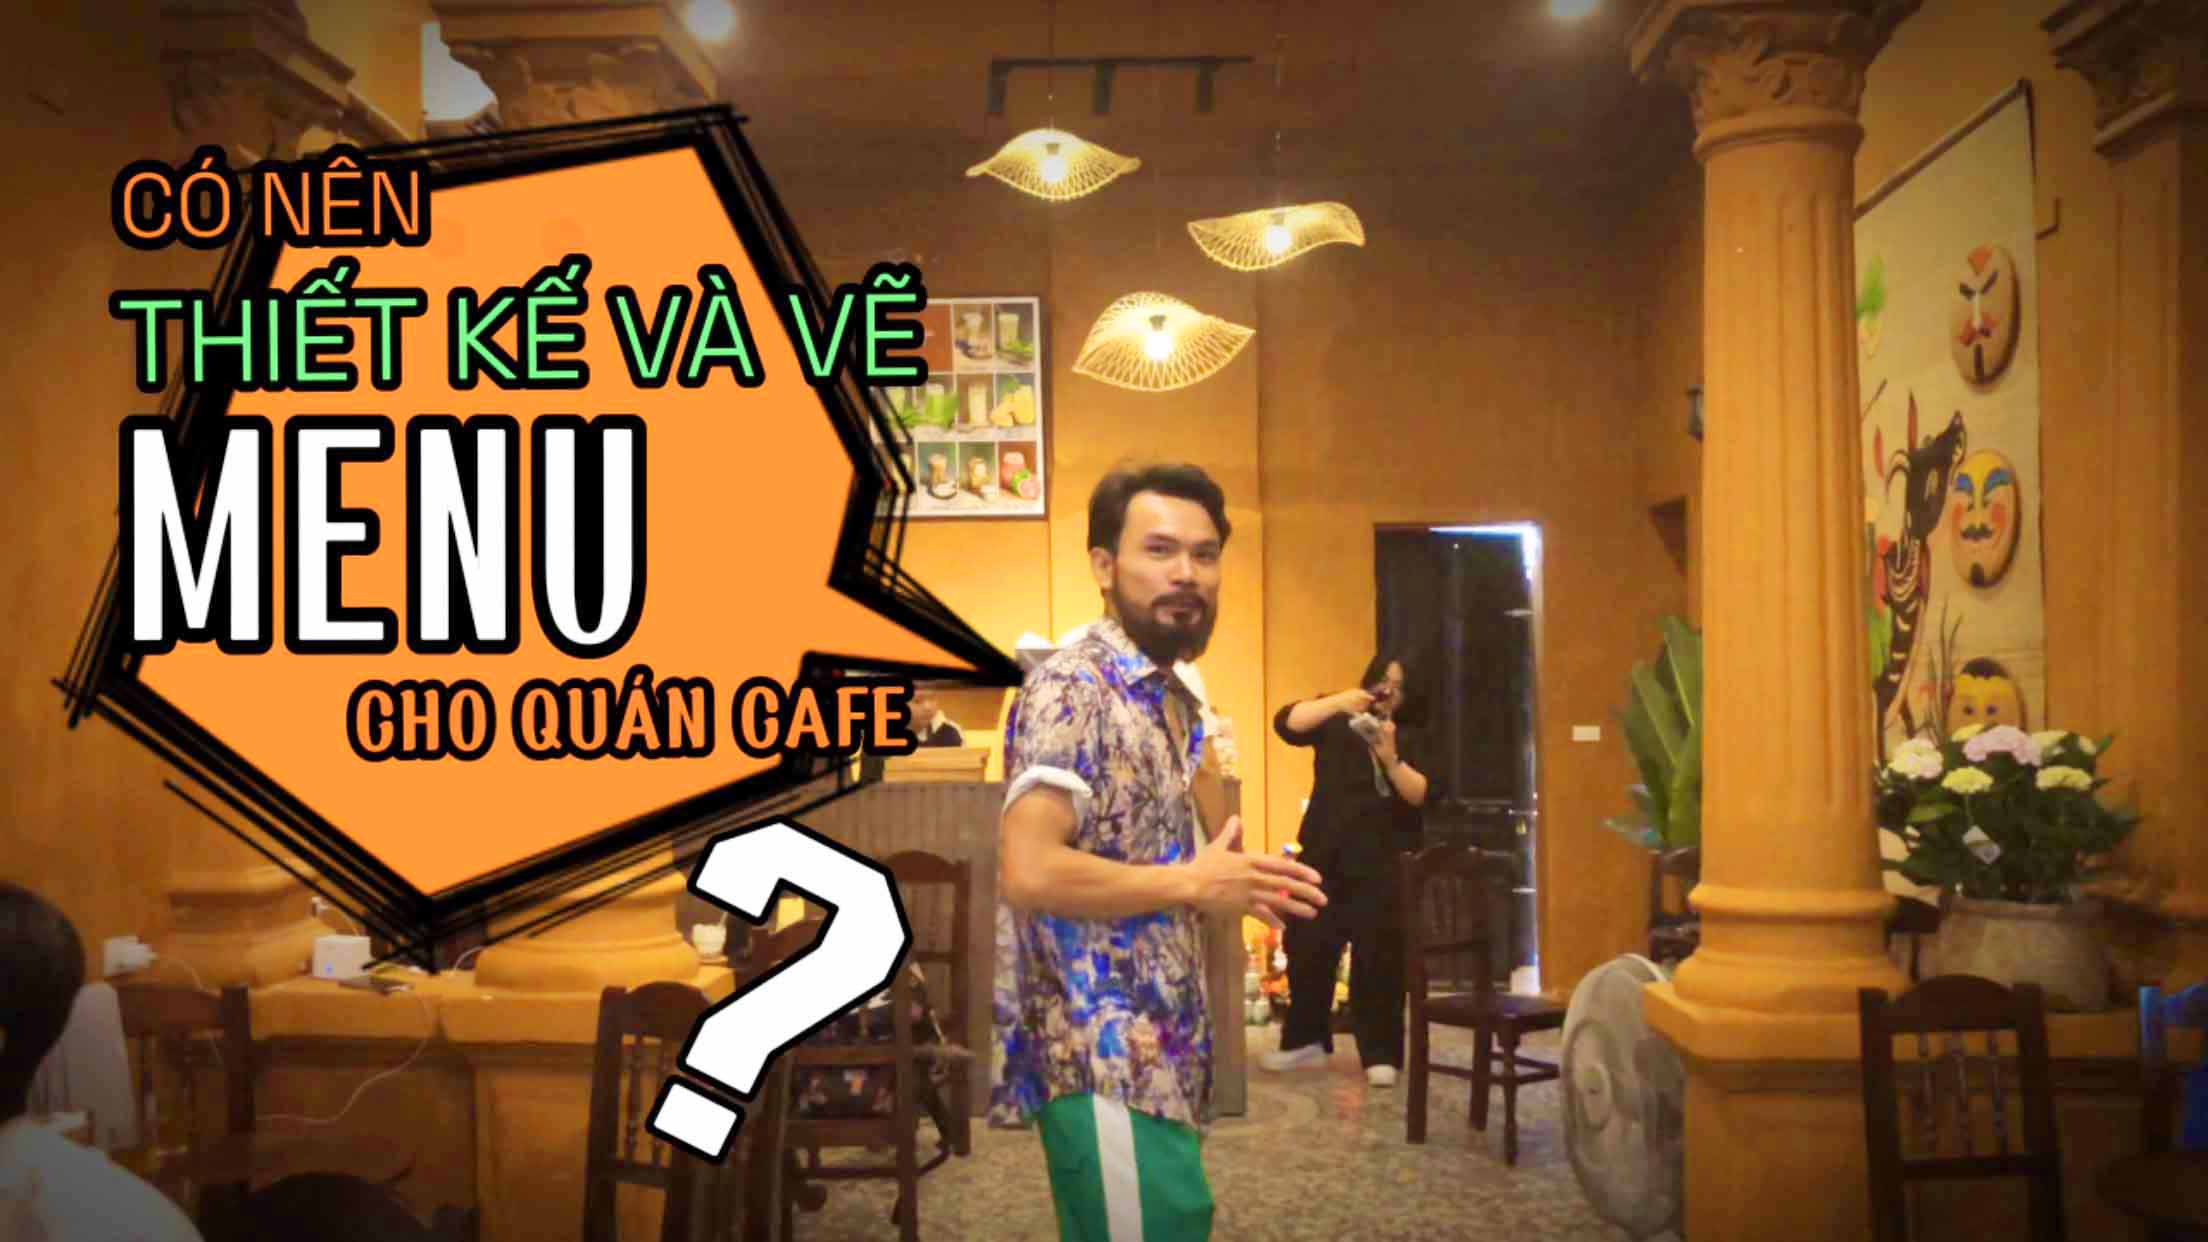 Có nên THIẾT KẾ và VẼ MENU cho quán cafe?